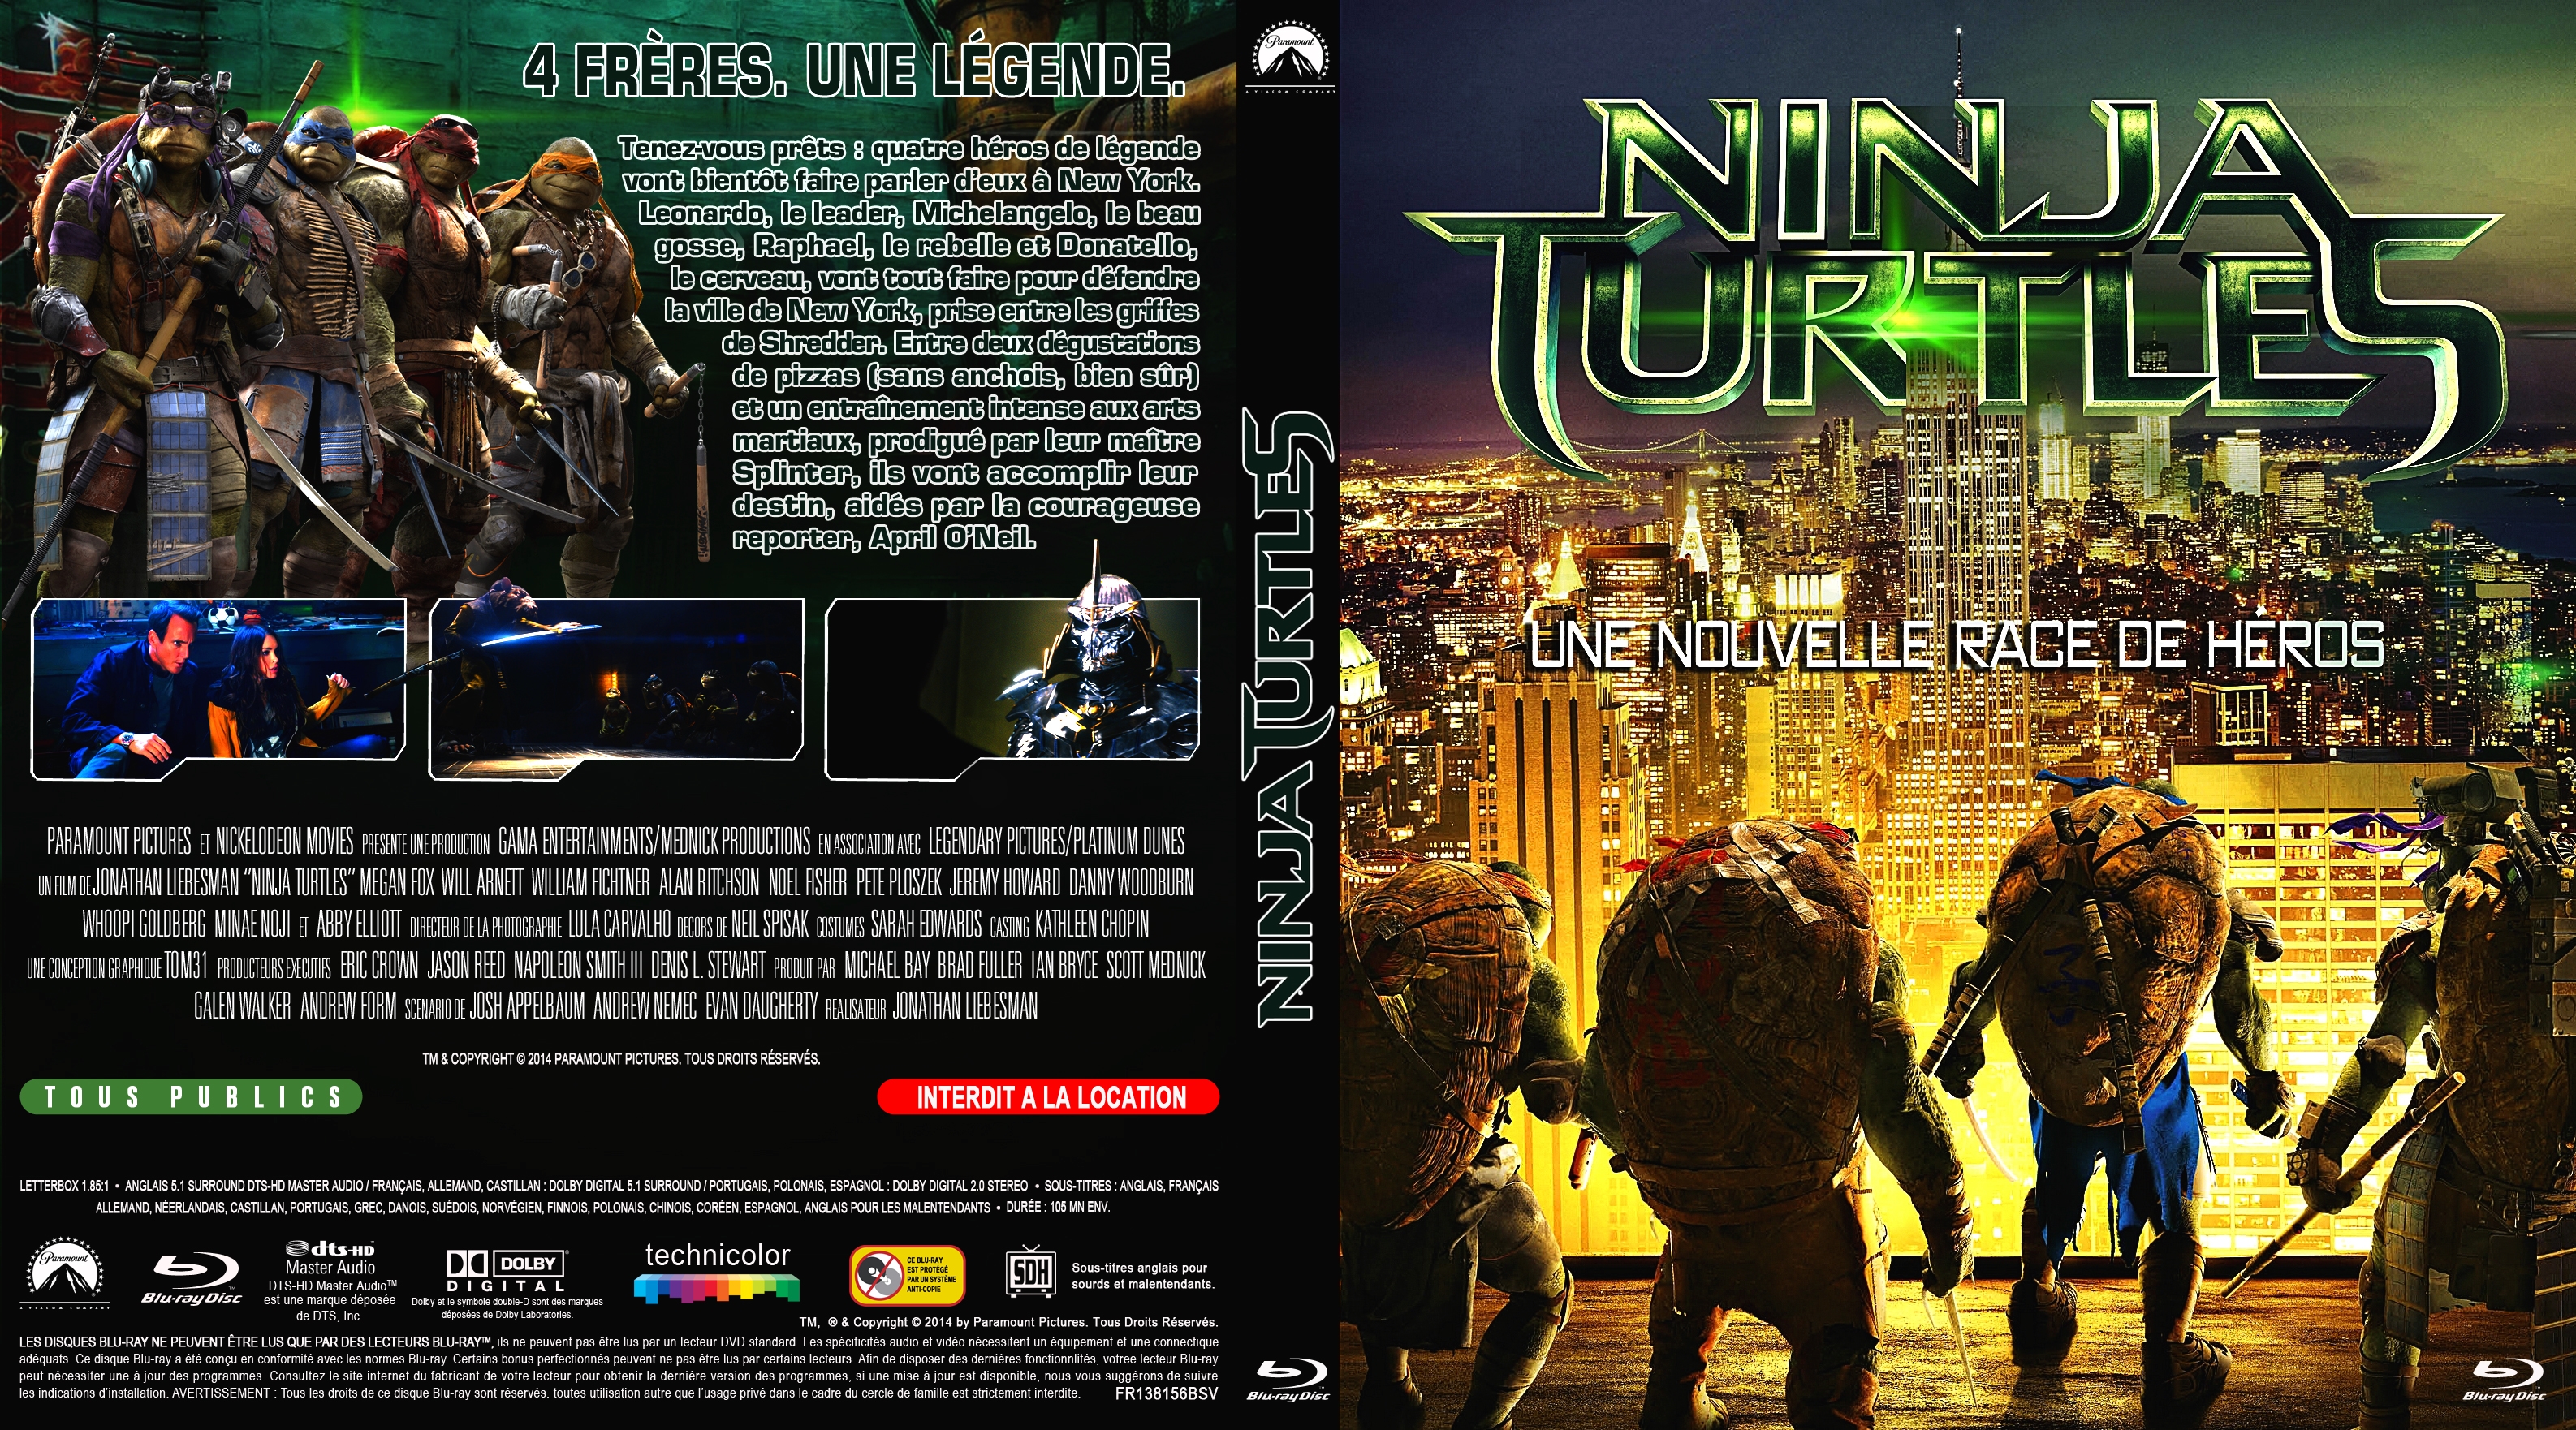 Jaquette DVD Ninja Turtles custom (BLU-RAY)